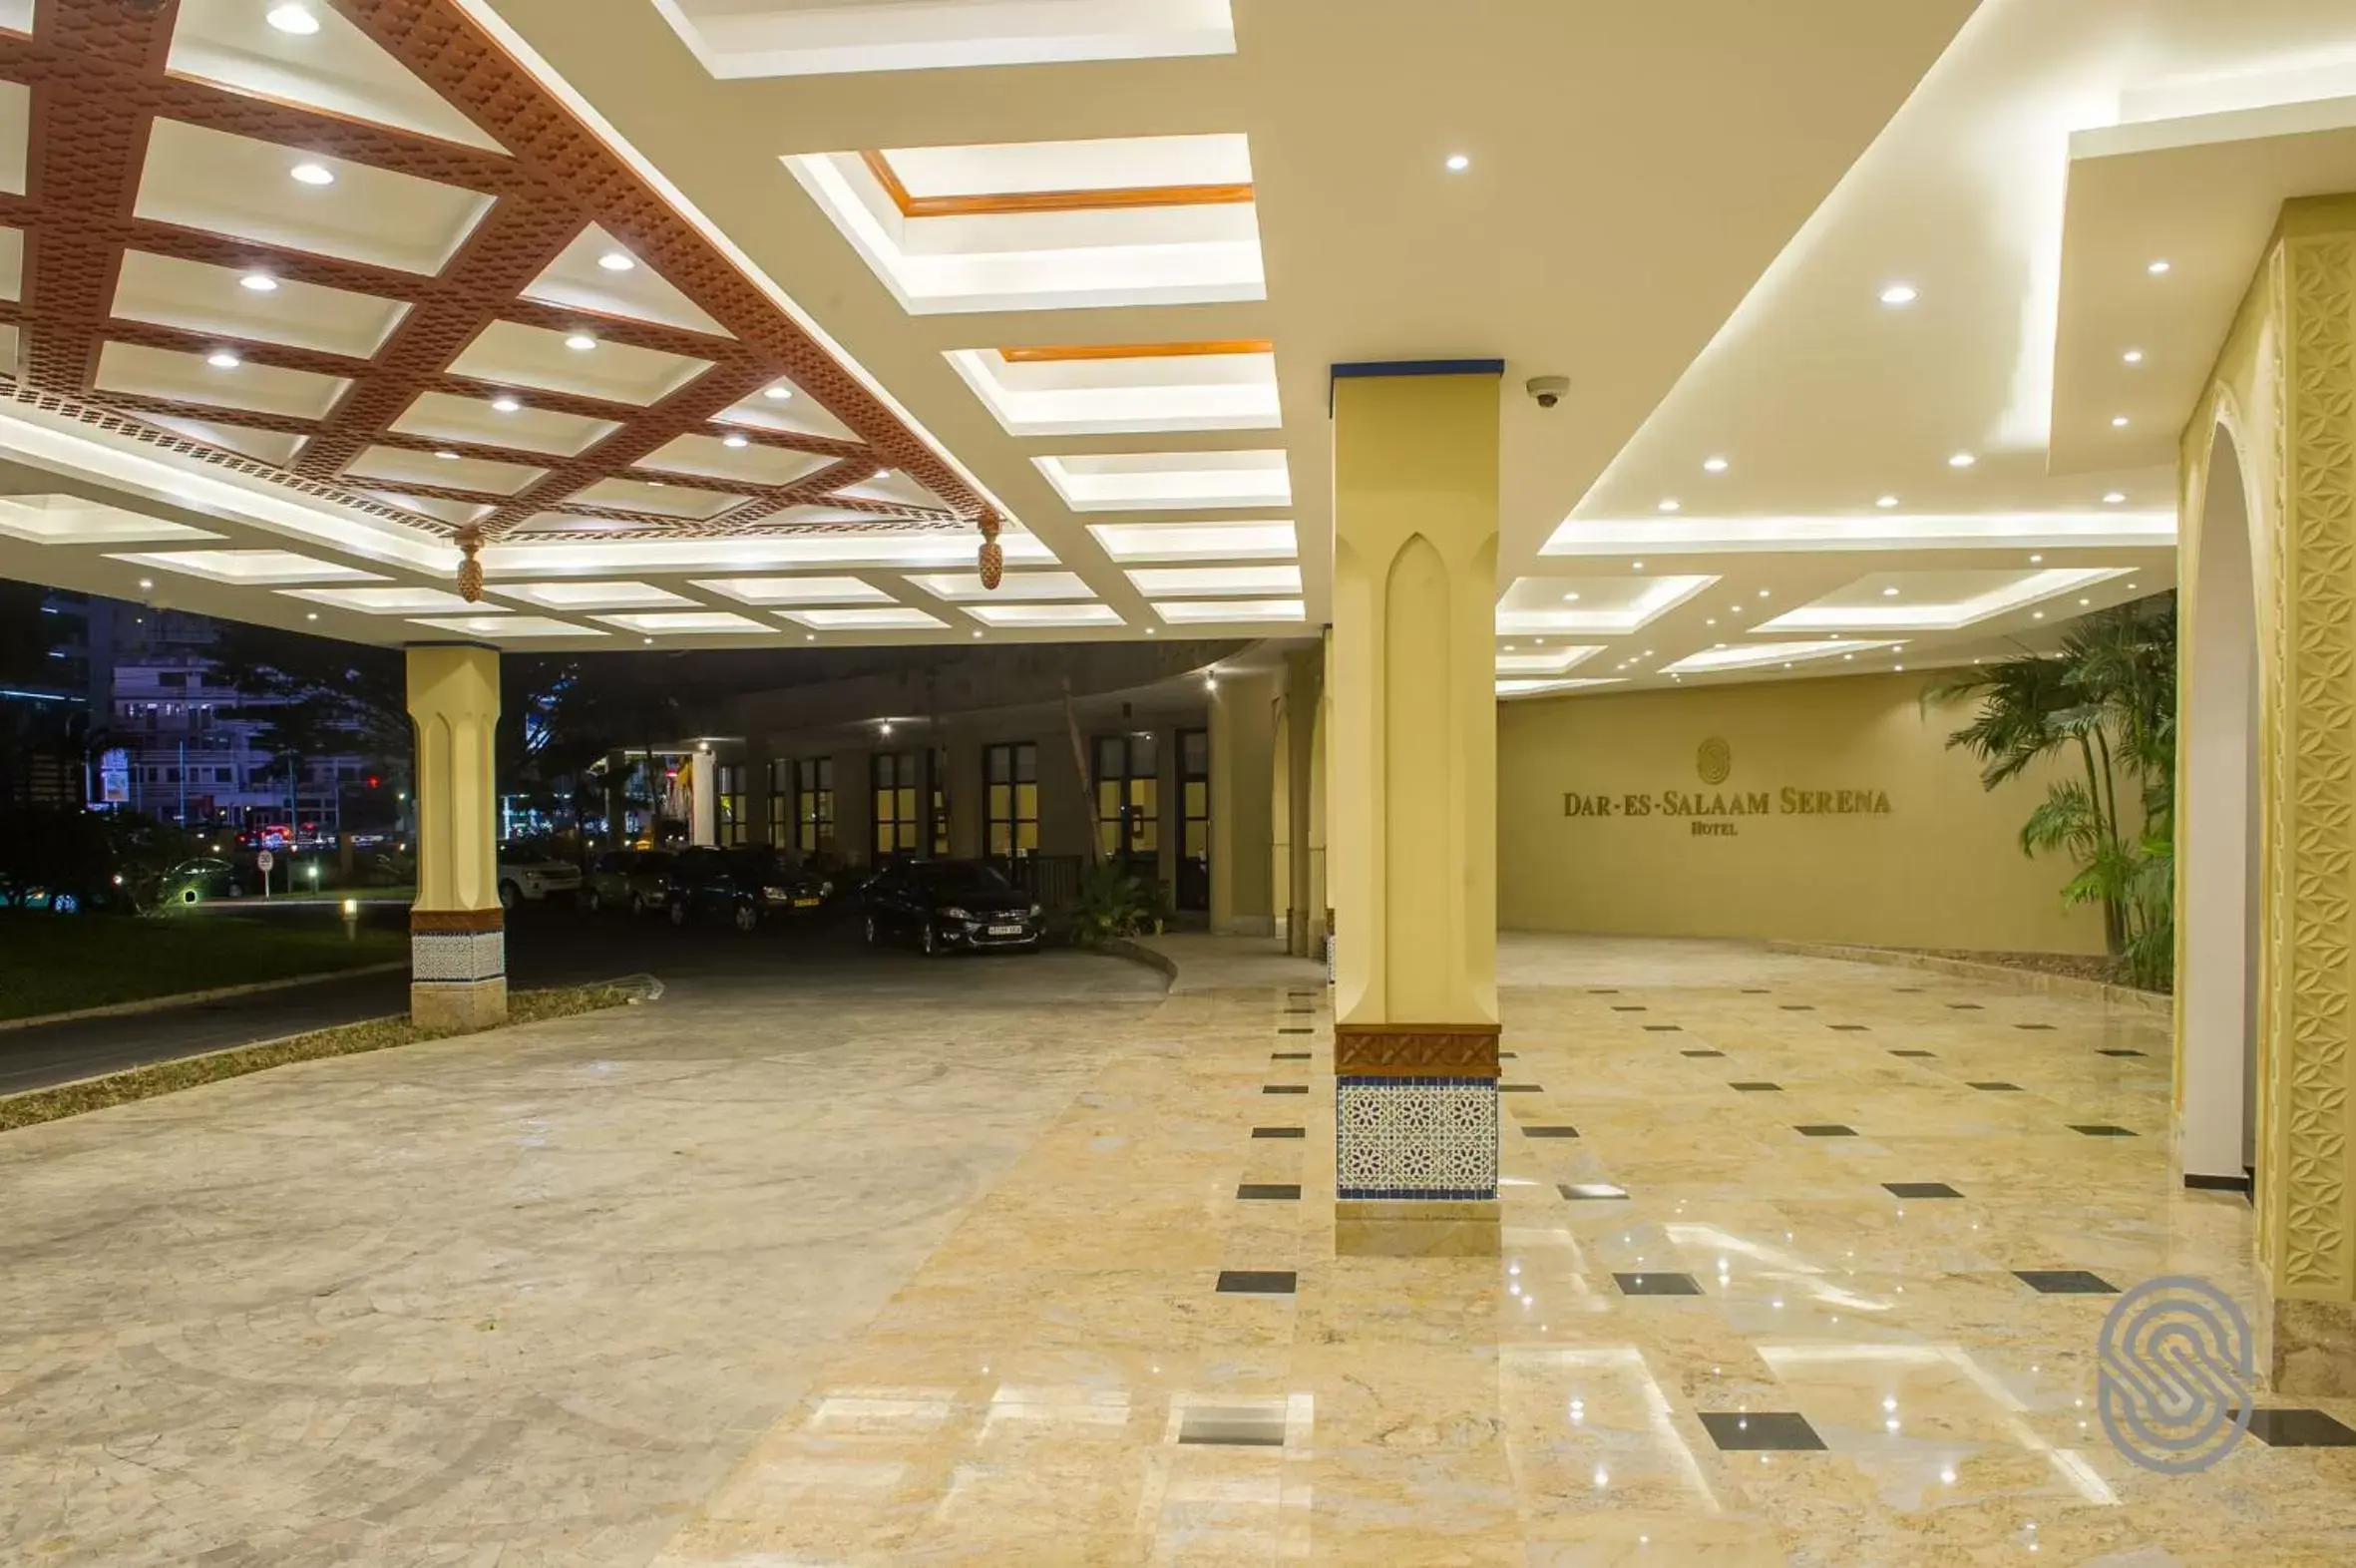 Balcony/Terrace, Lobby/Reception in Dar es Salaam Serena Hotel